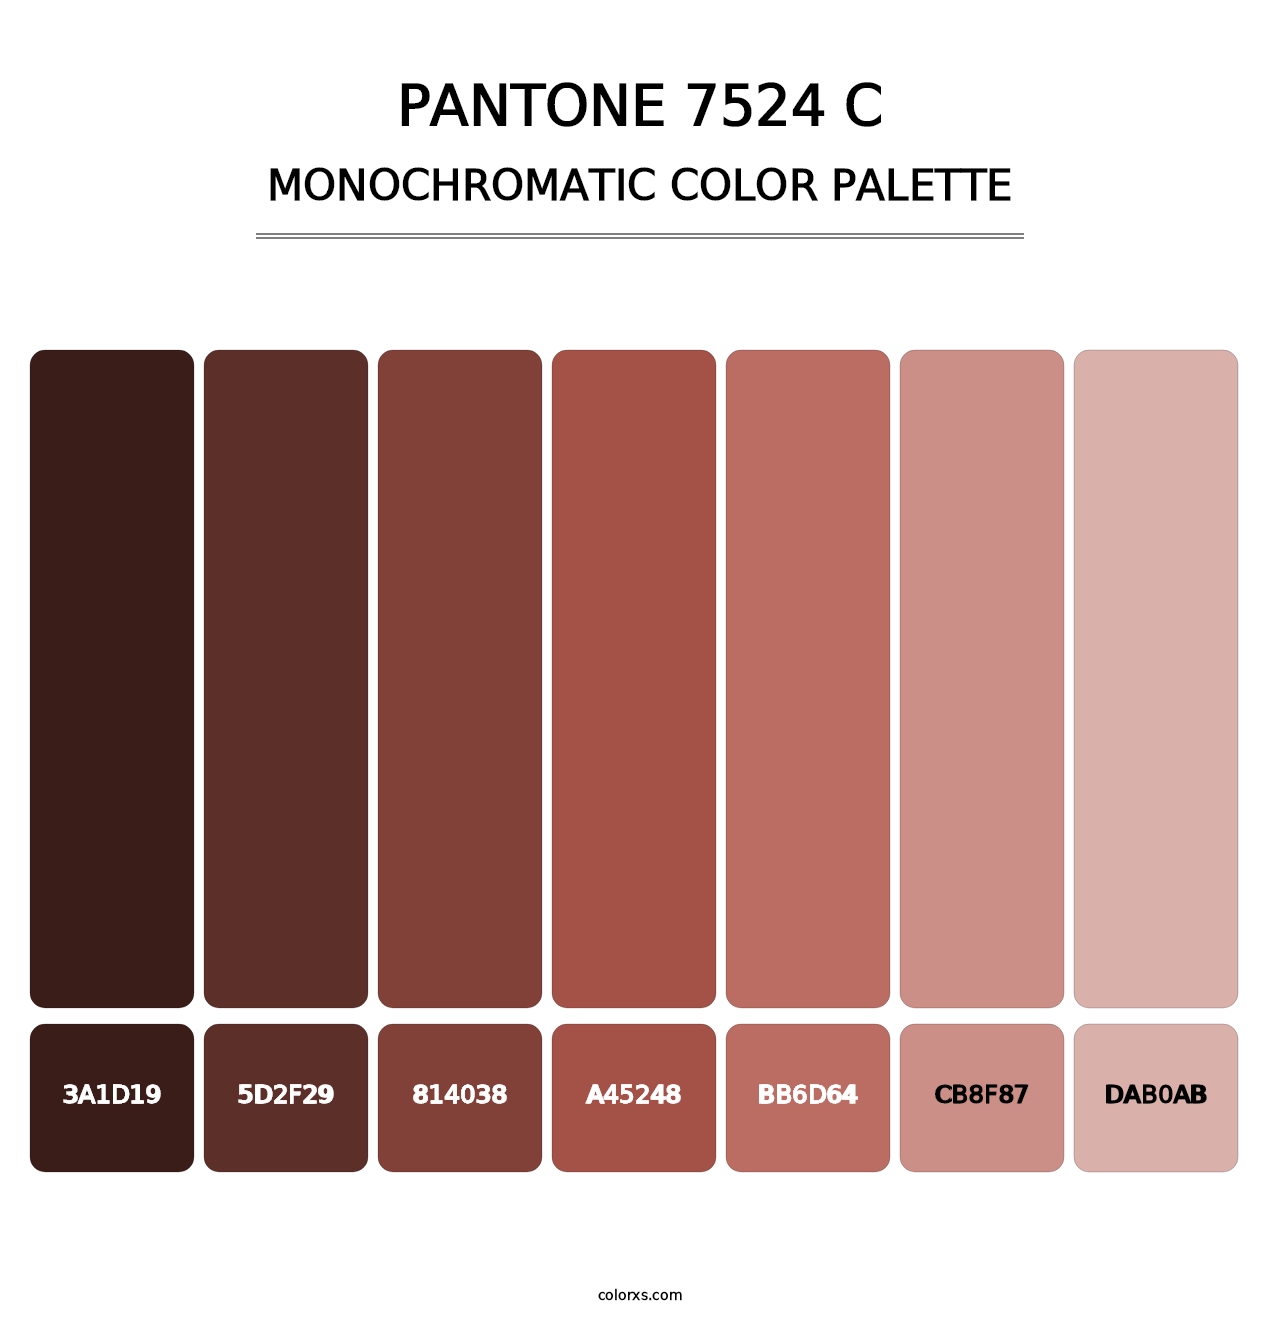 PANTONE 7524 C - Monochromatic Color Palette